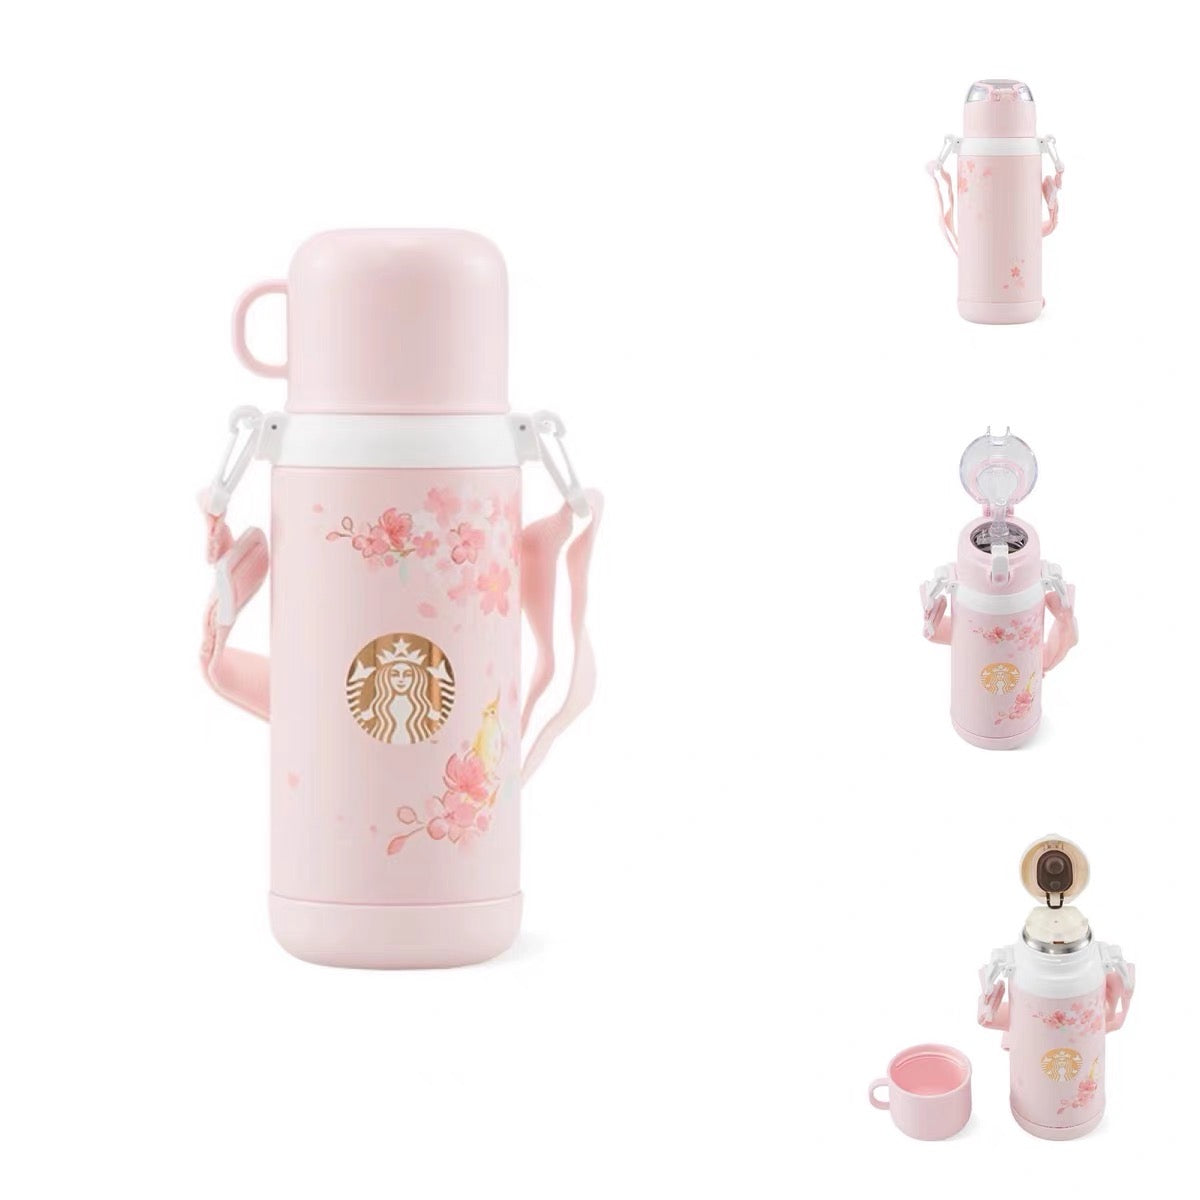 Starbucks × Thermos China 2022 Sakura Season 550ml pink sakura with bird vacuum cup（2 ways to use）